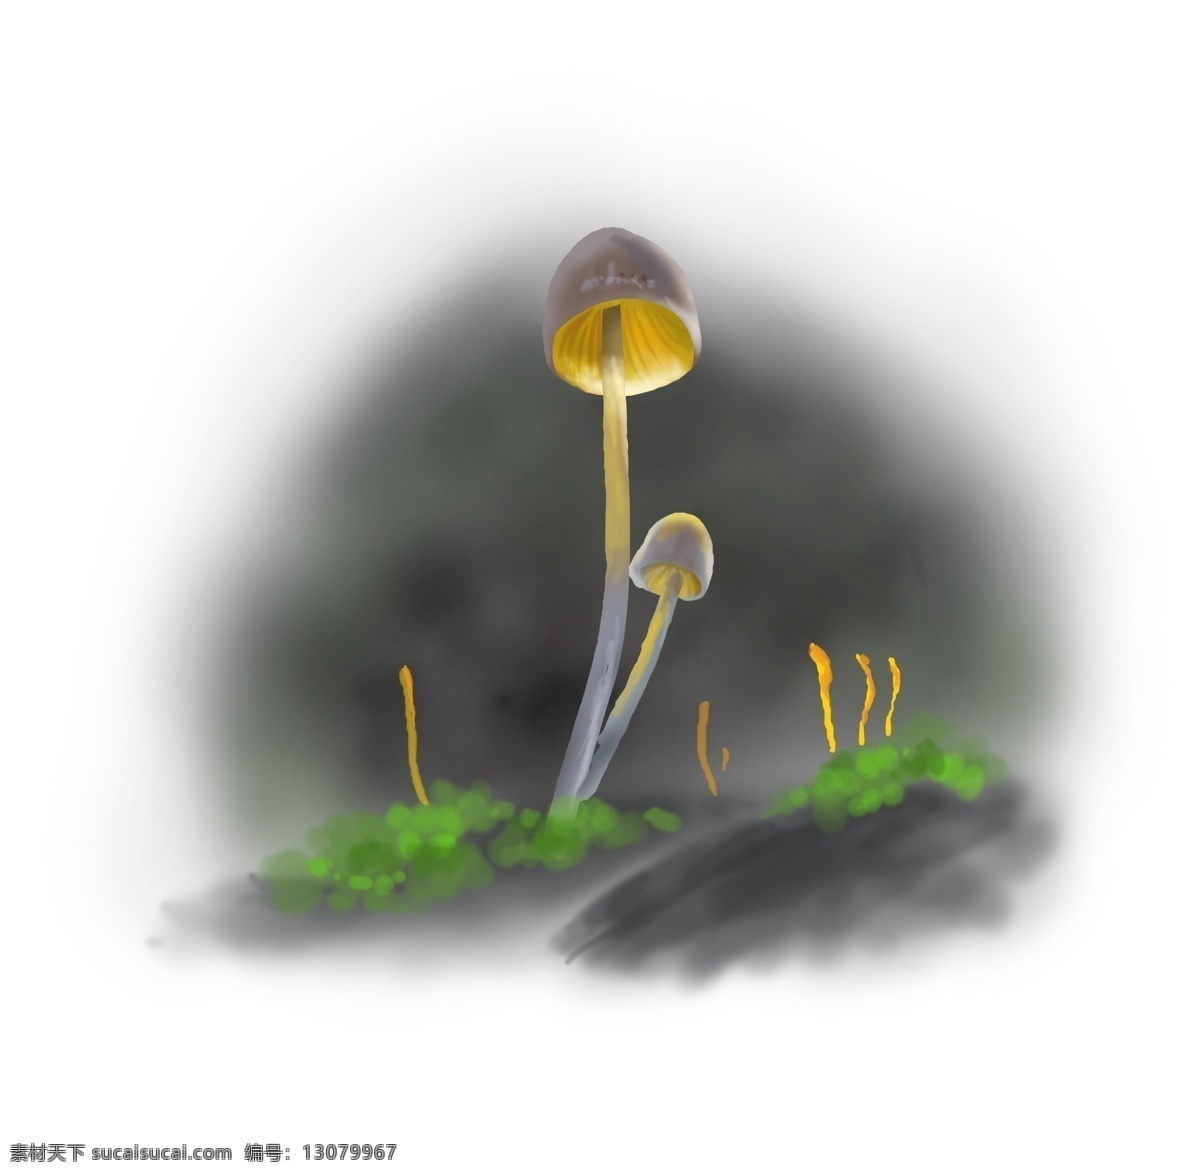 春天 手绘 蘑菇 插画 绿色 草地 苔藓 雨林 树林 林子 菌类 特写 清新 自然 食物 植物